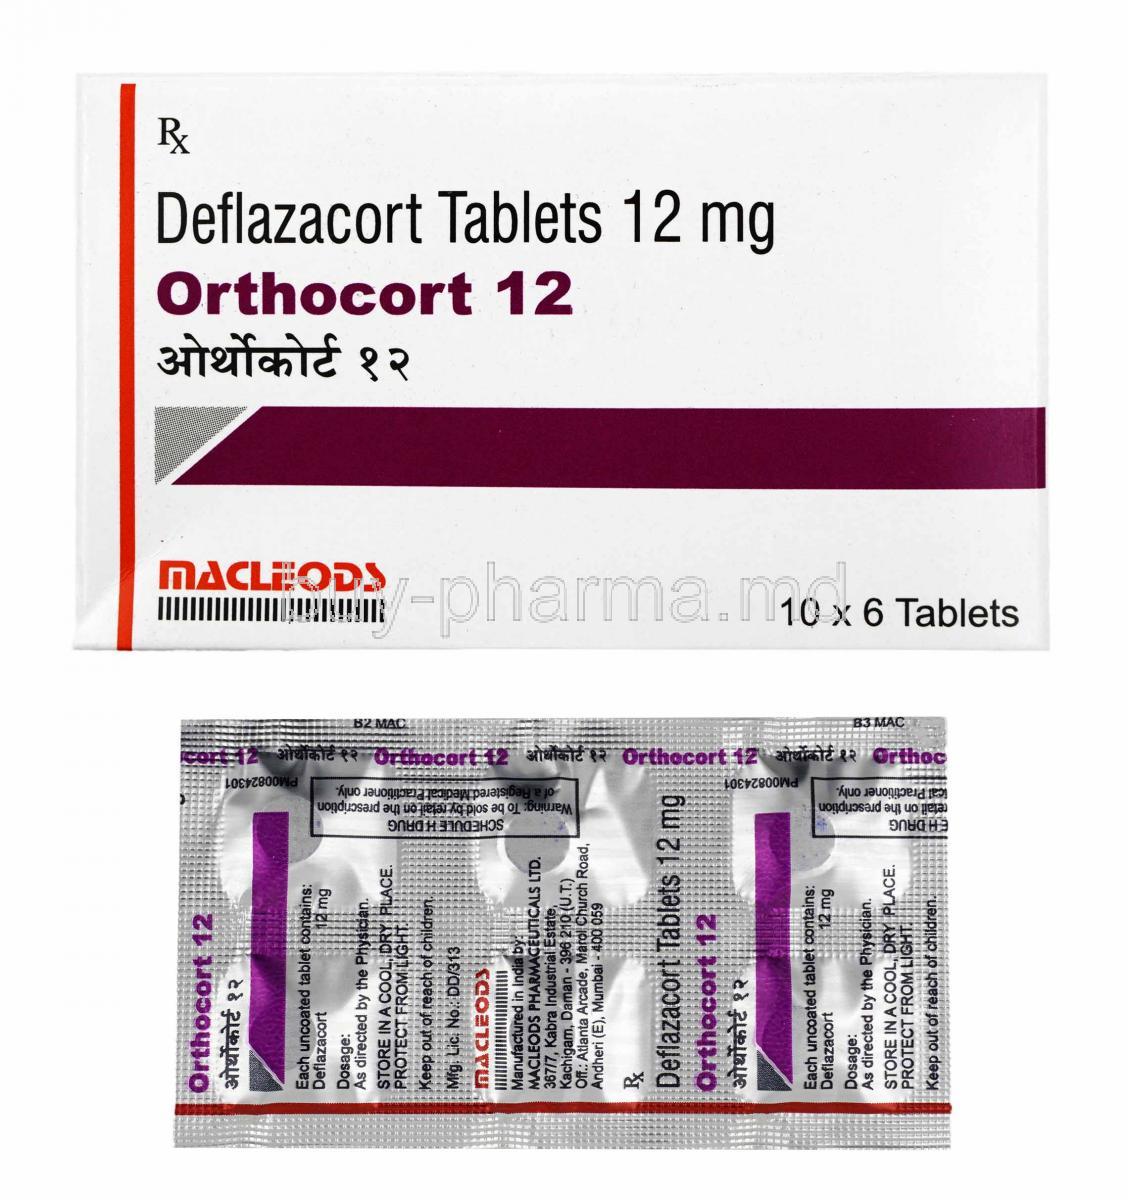 Orthocort, Deflazacort 12mg box and tablets